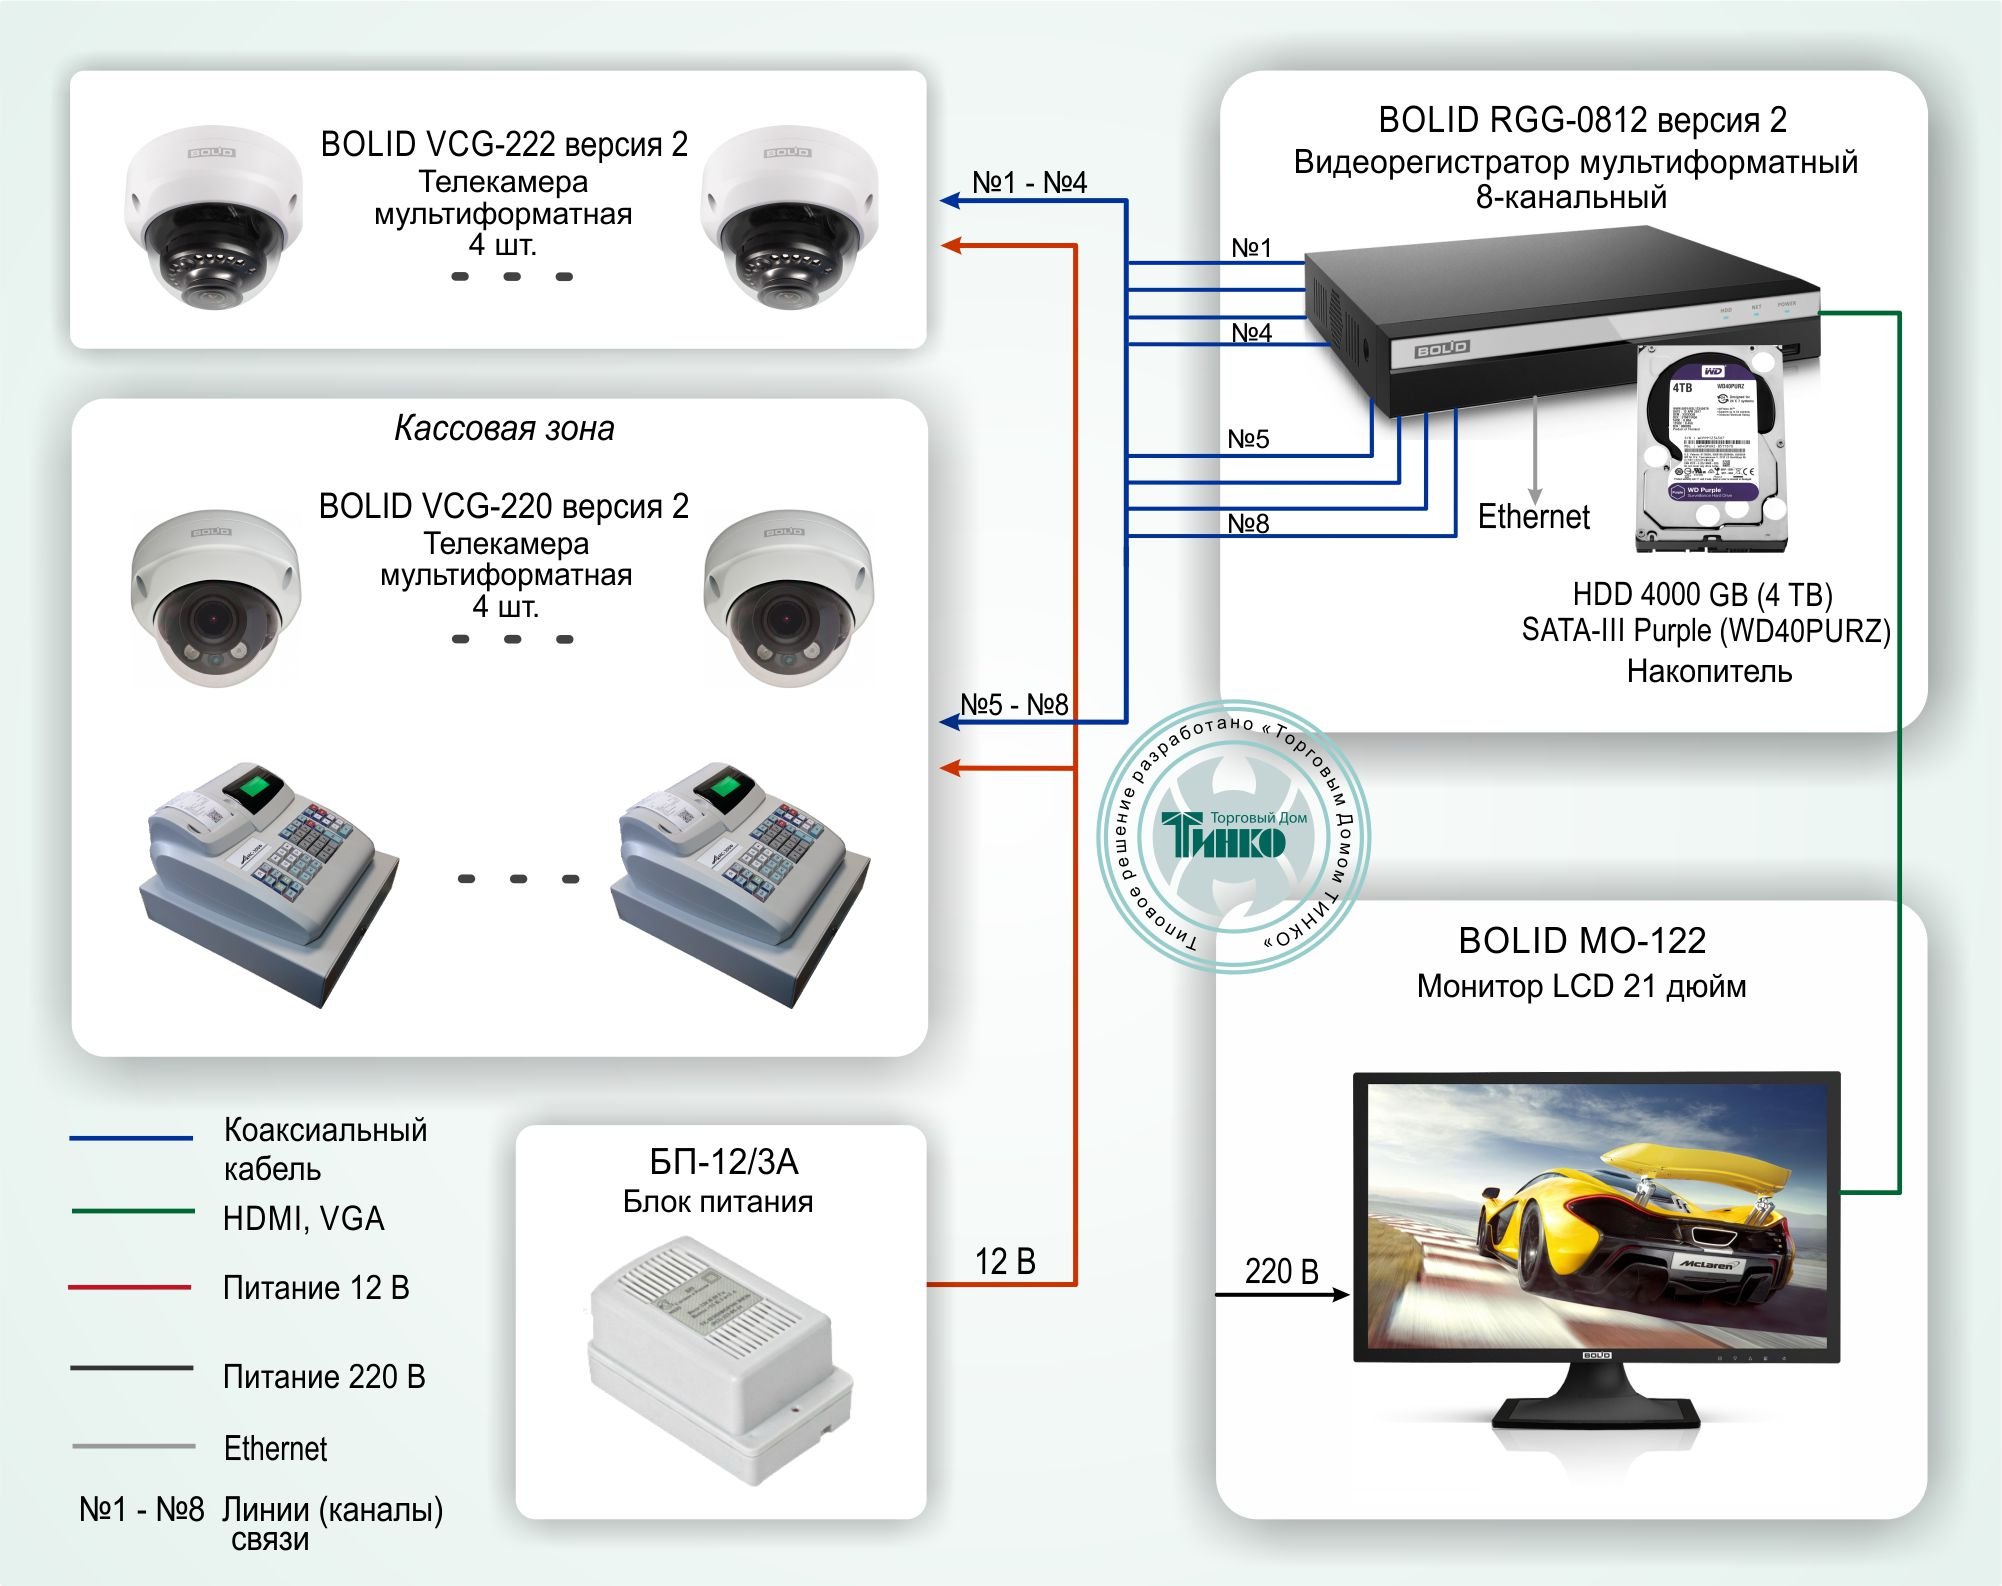 ТСН-001: Система видеонаблюдения для магазина на базе оборудования Болид